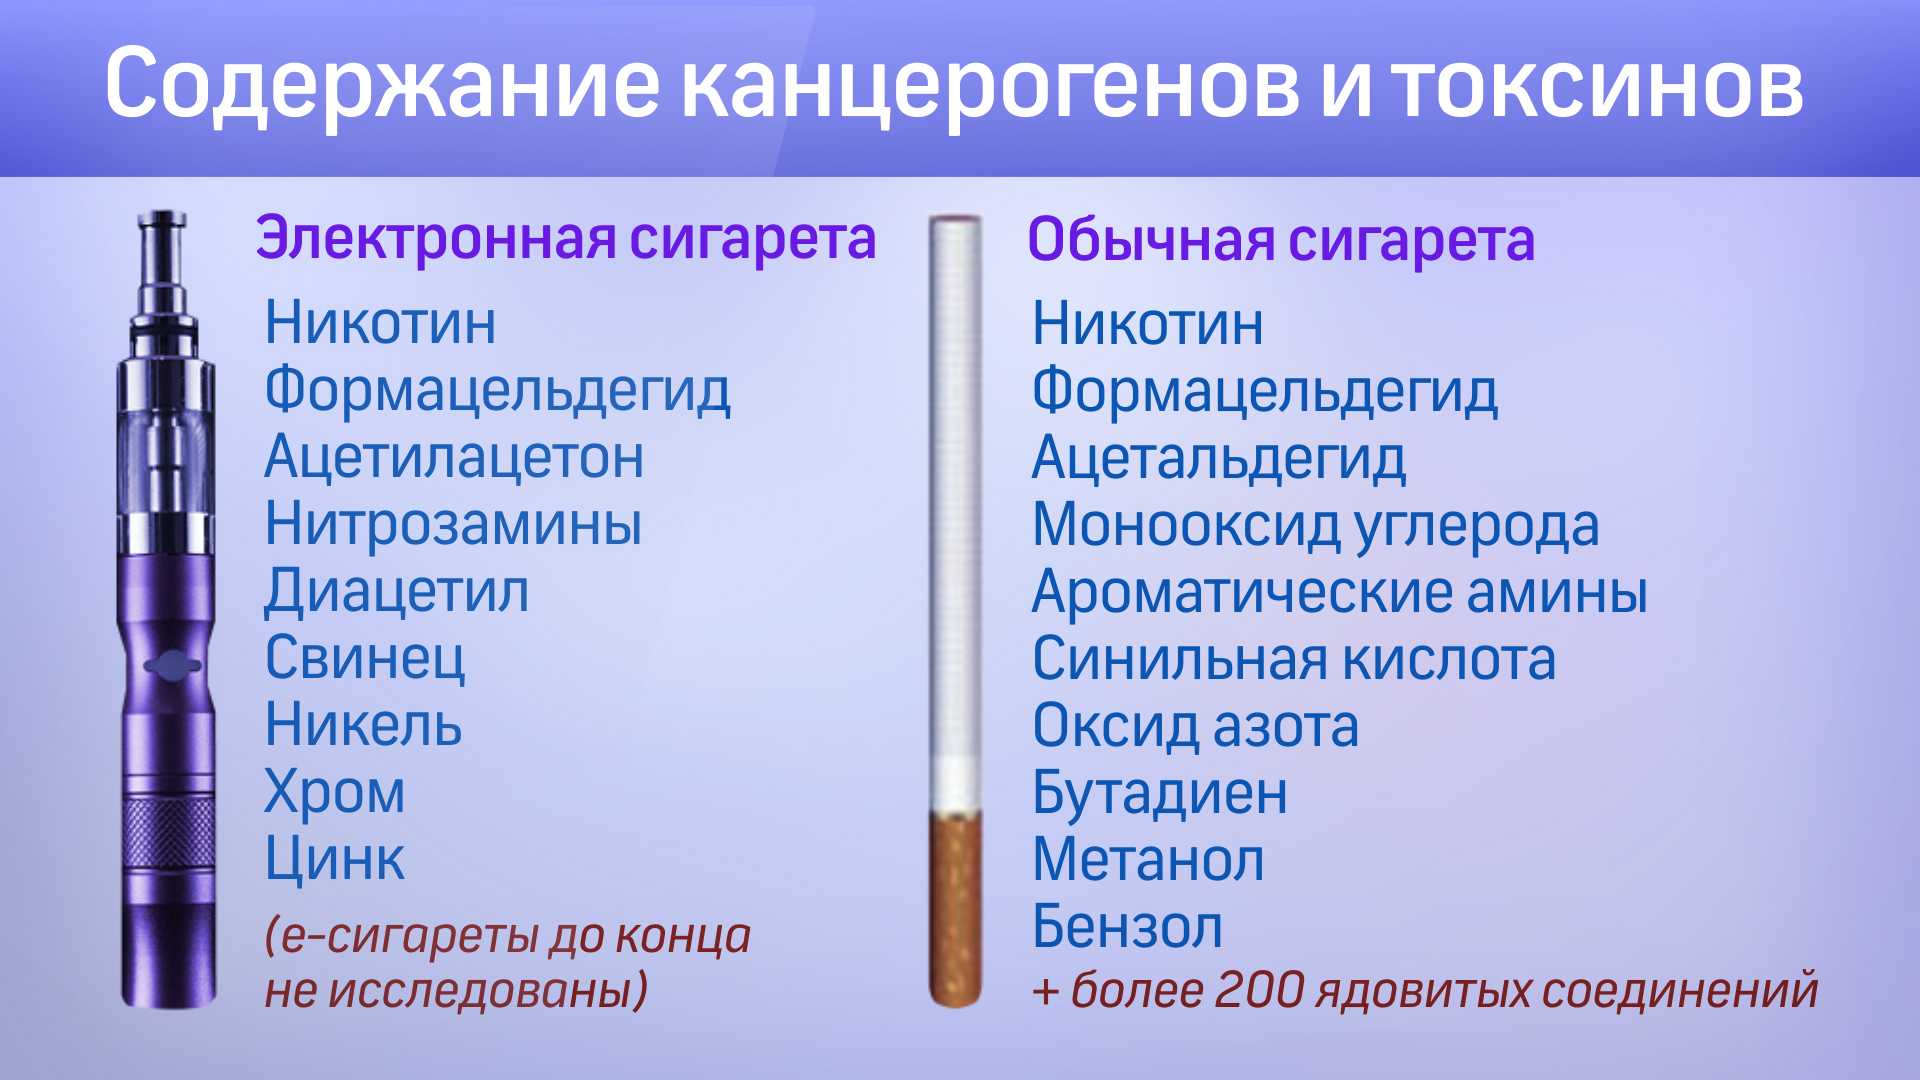 Вред курения электронных сигарет